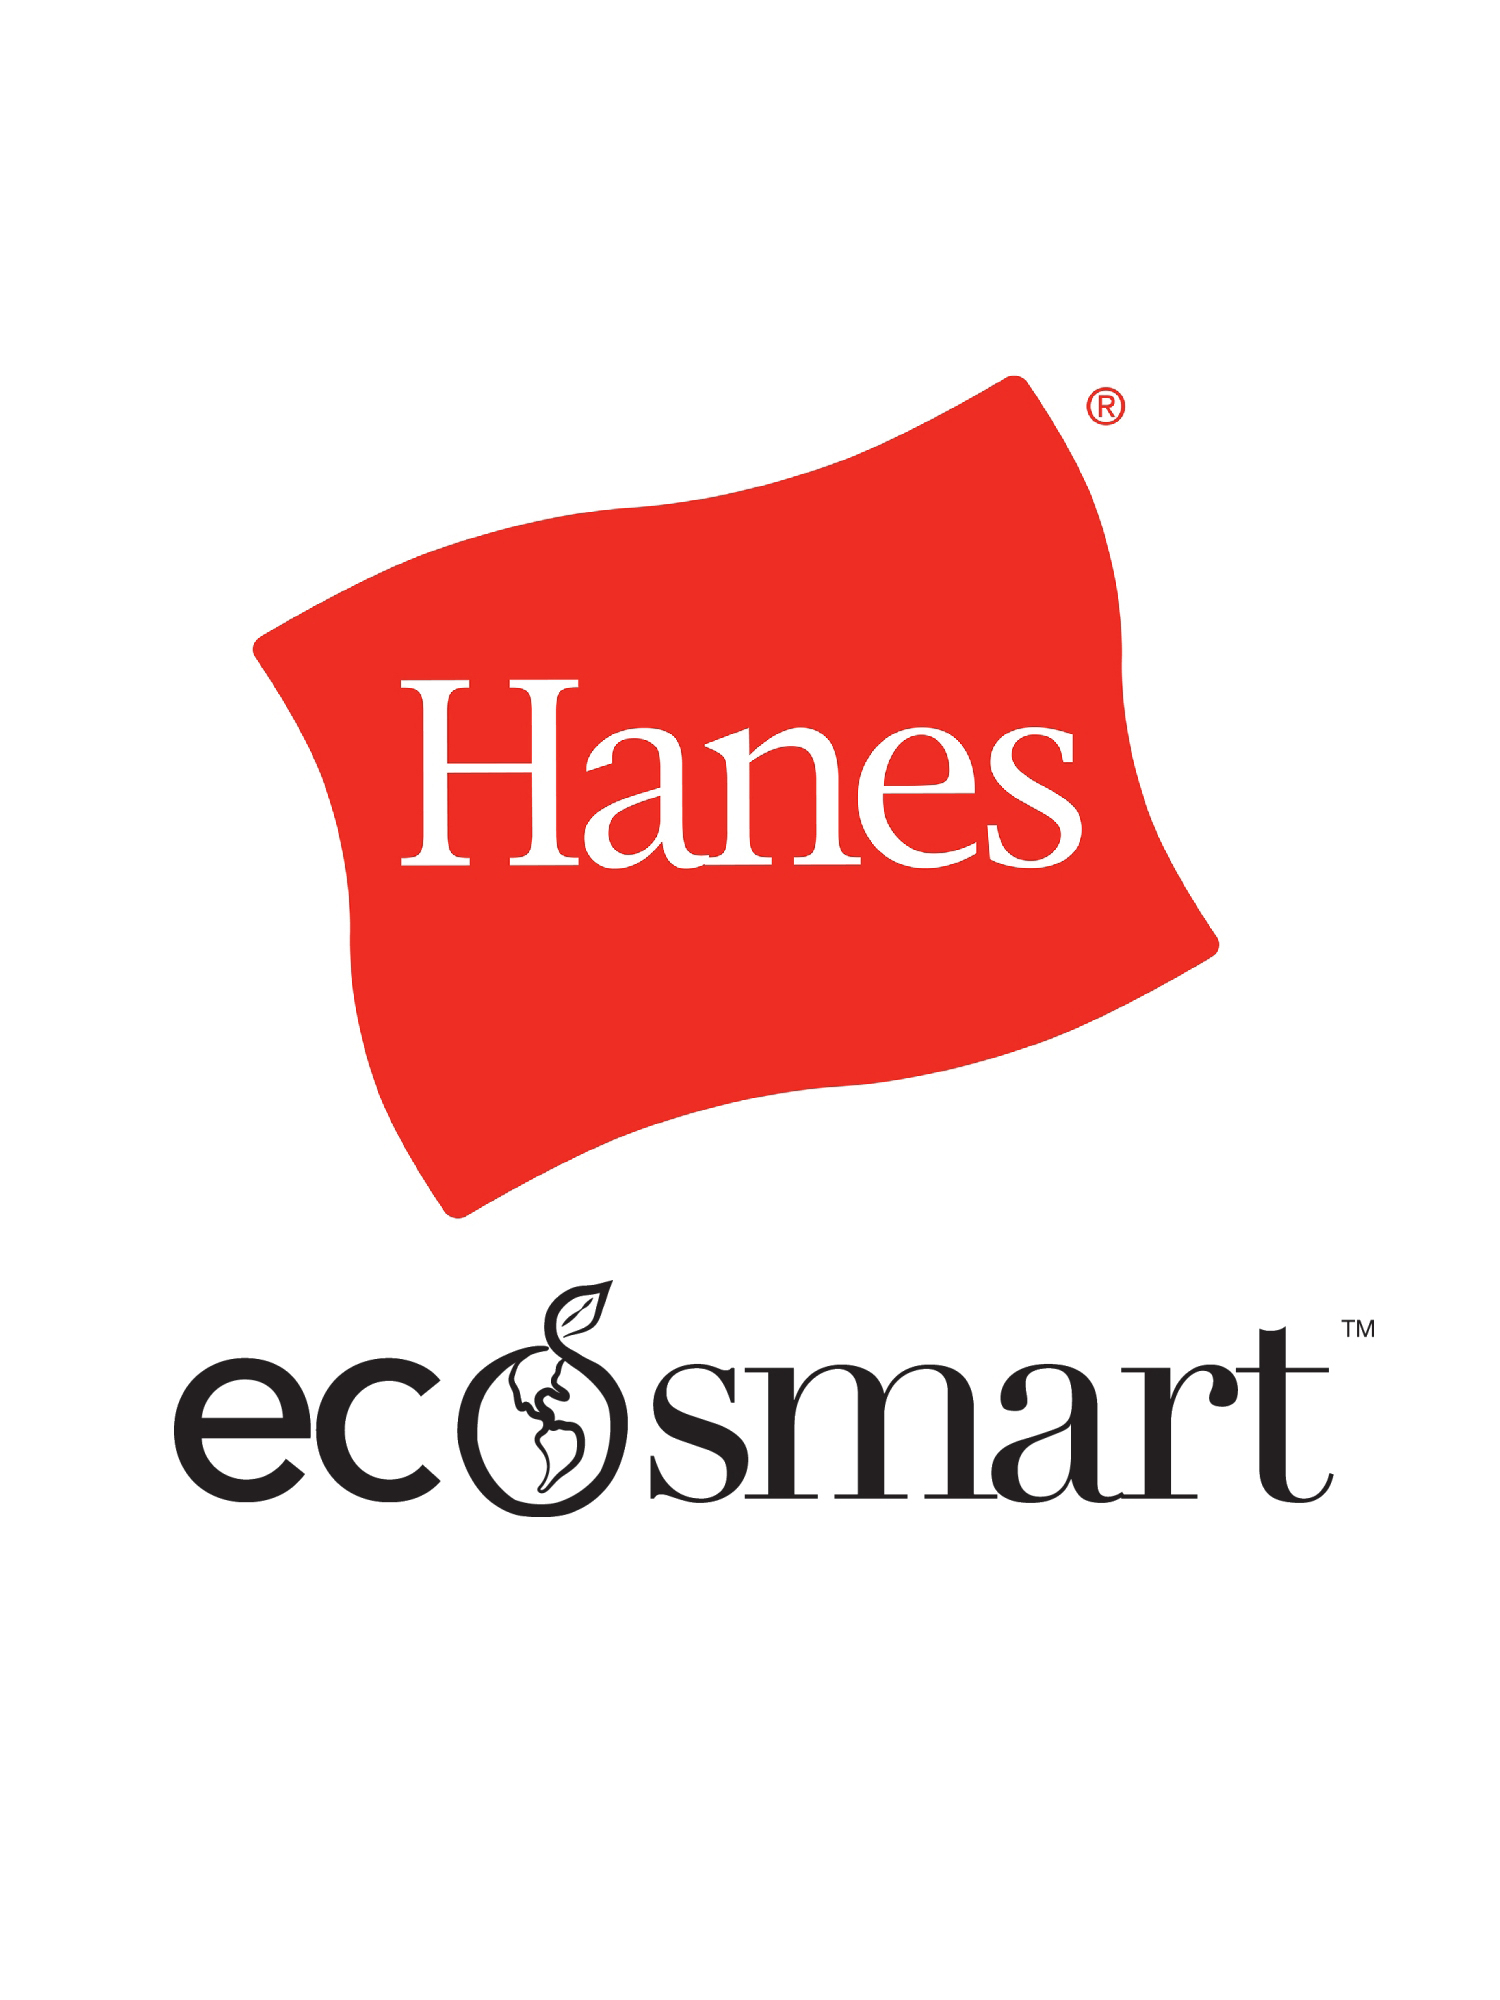 Hanes Men's and Big Men's EcoSmart Fleece Sweatpants, Sizes S-3XL - image 2 of 7